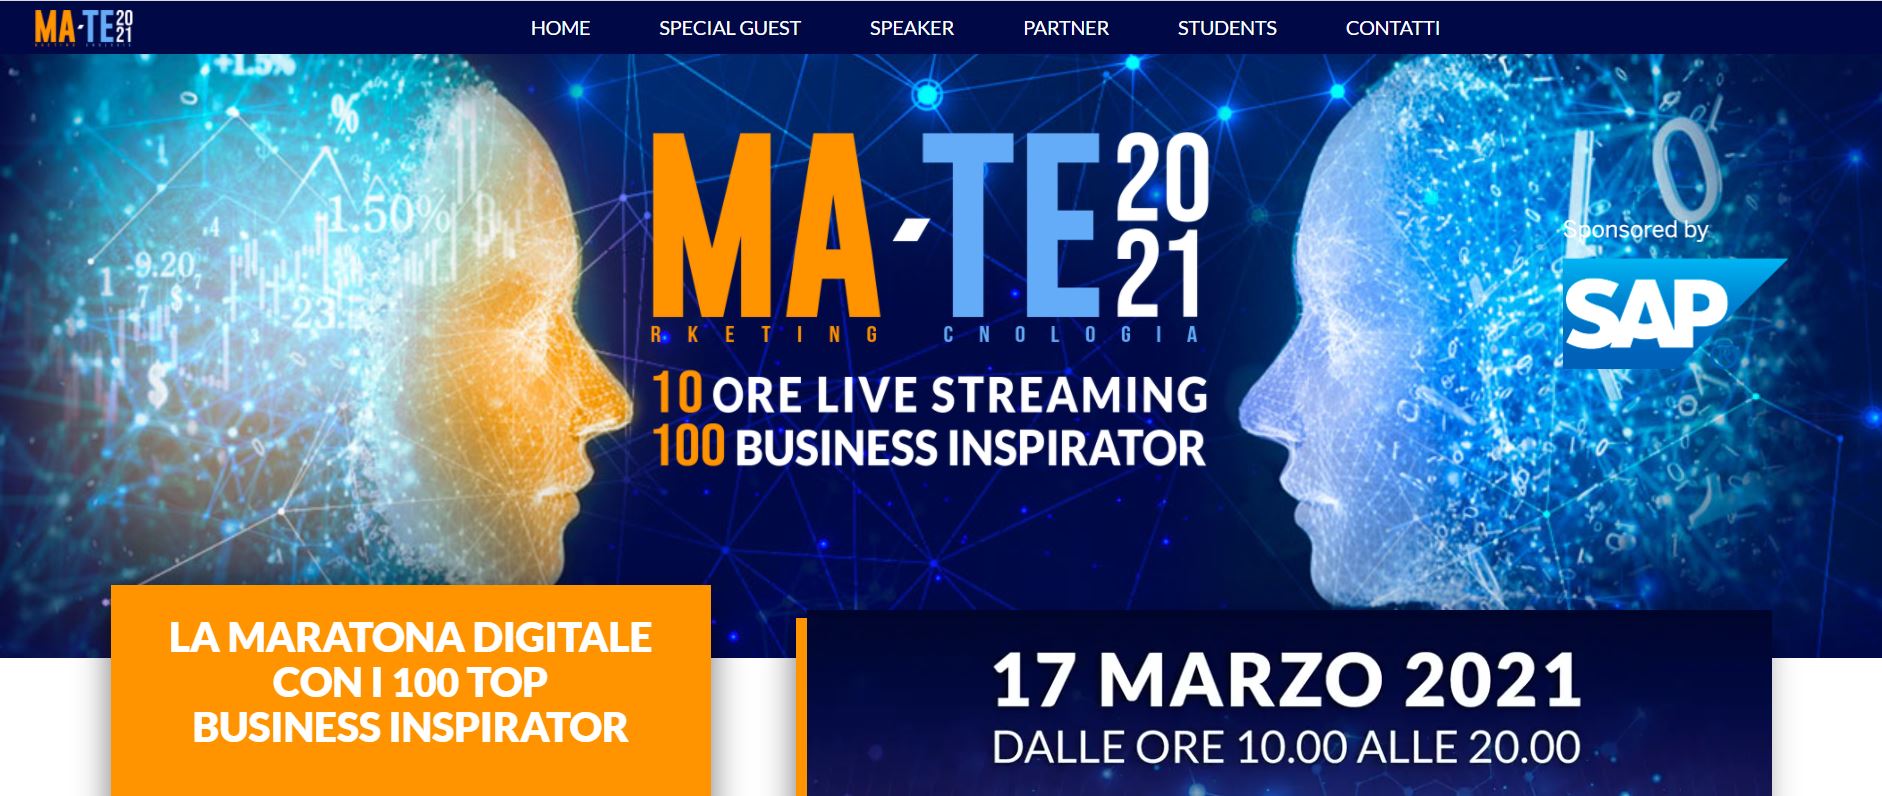 MA-TE 2021: arriva la più grande maratona digitale dedicata  al marketing e alla tecnologia promossa da SAP Italia per mettere  in connessione aziende e studenti universitari